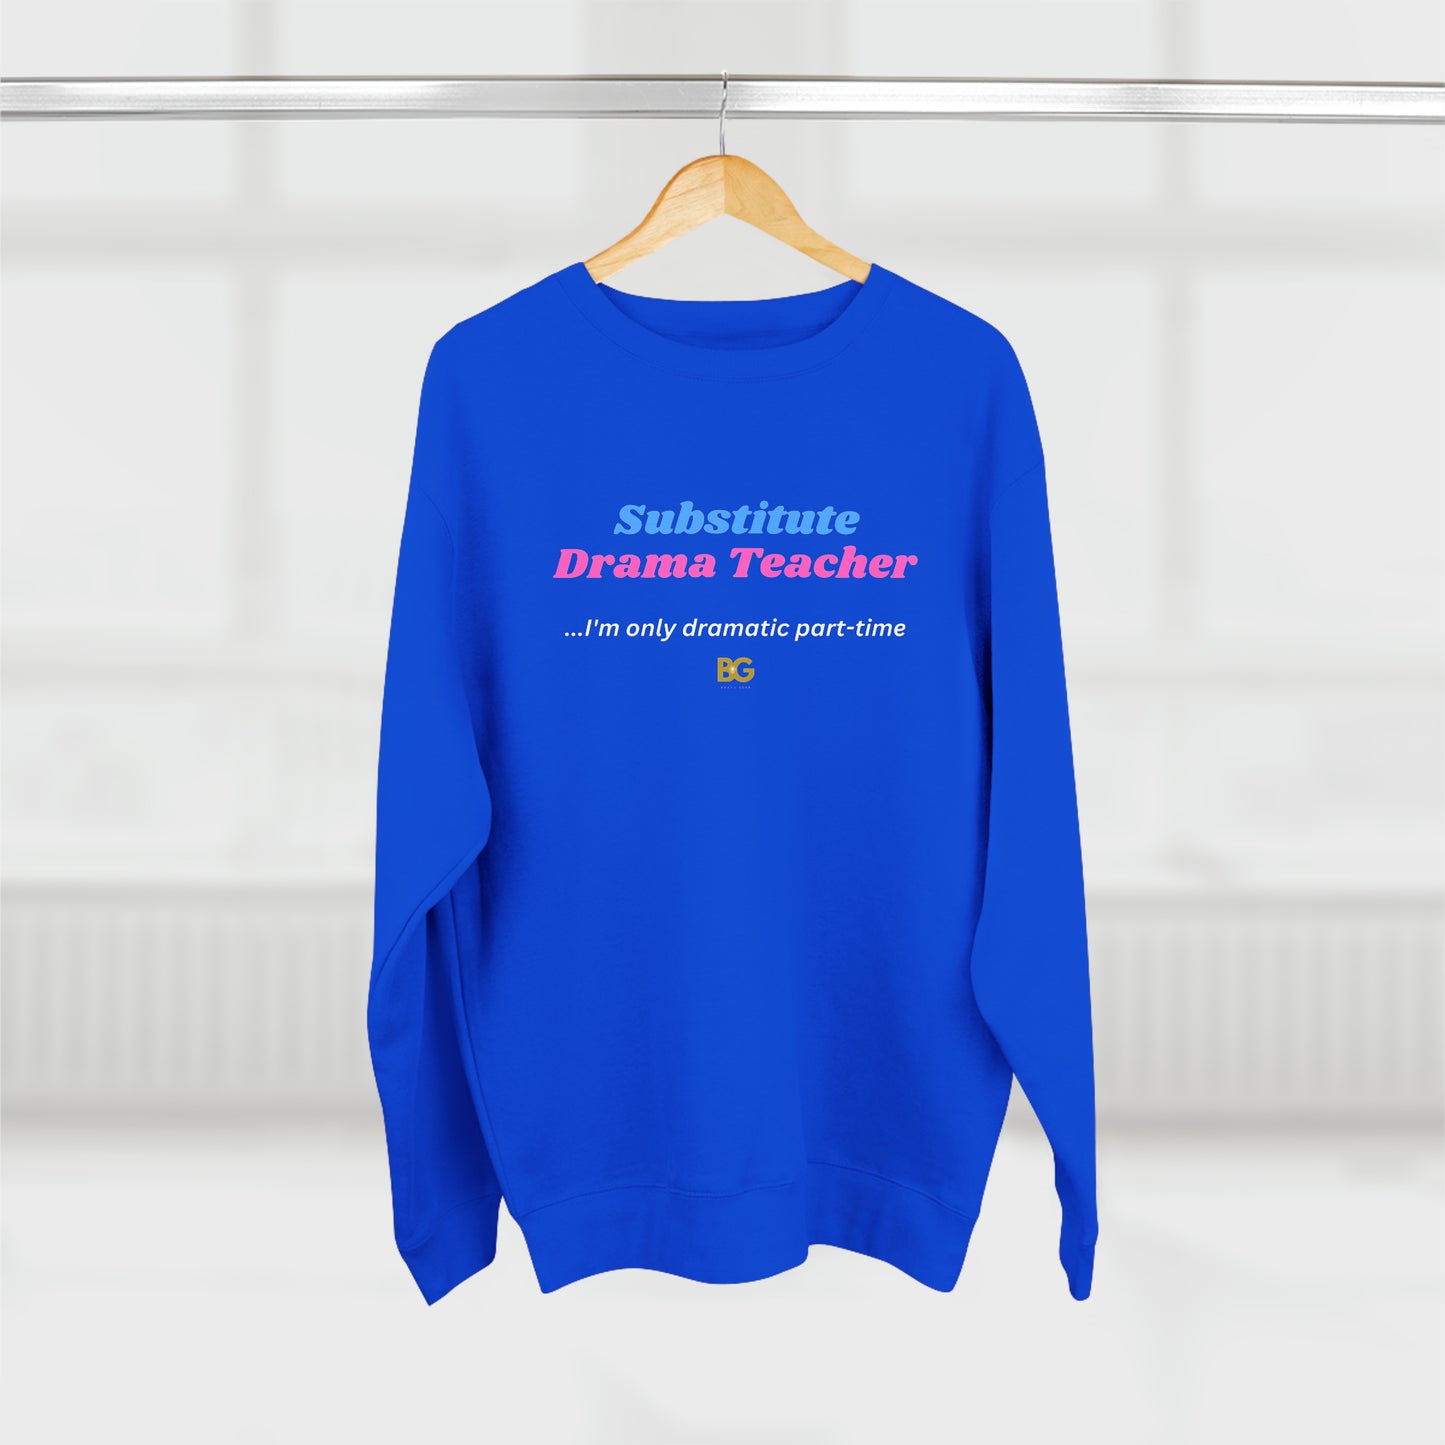 BG "Substitute Drama Teacher" Premium Crewneck Sweatshirt